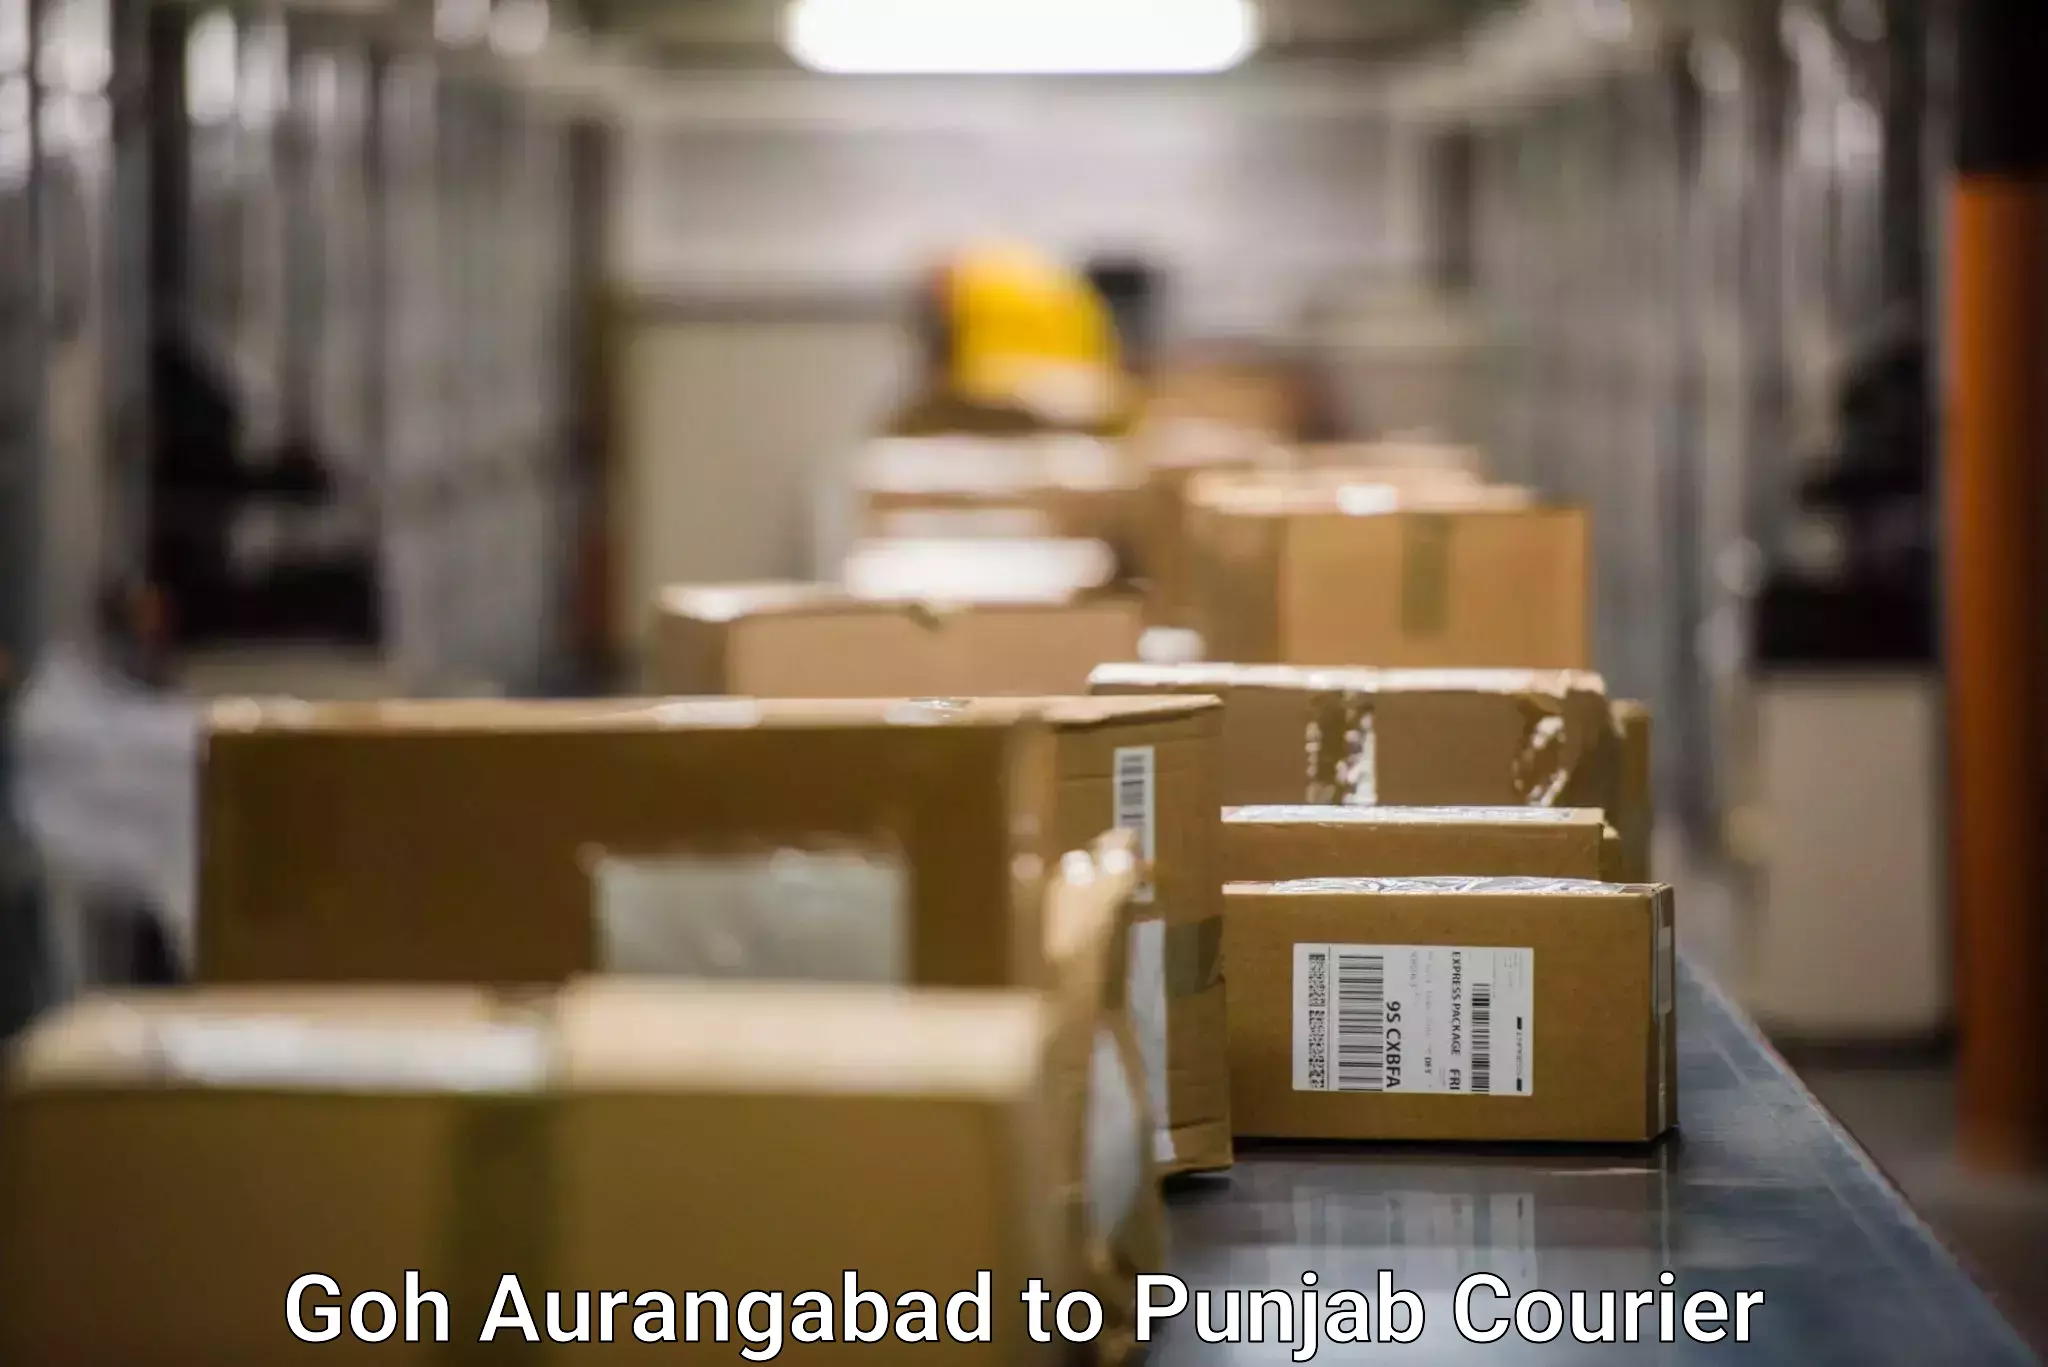 Parcel service for businesses Goh Aurangabad to Amritsar